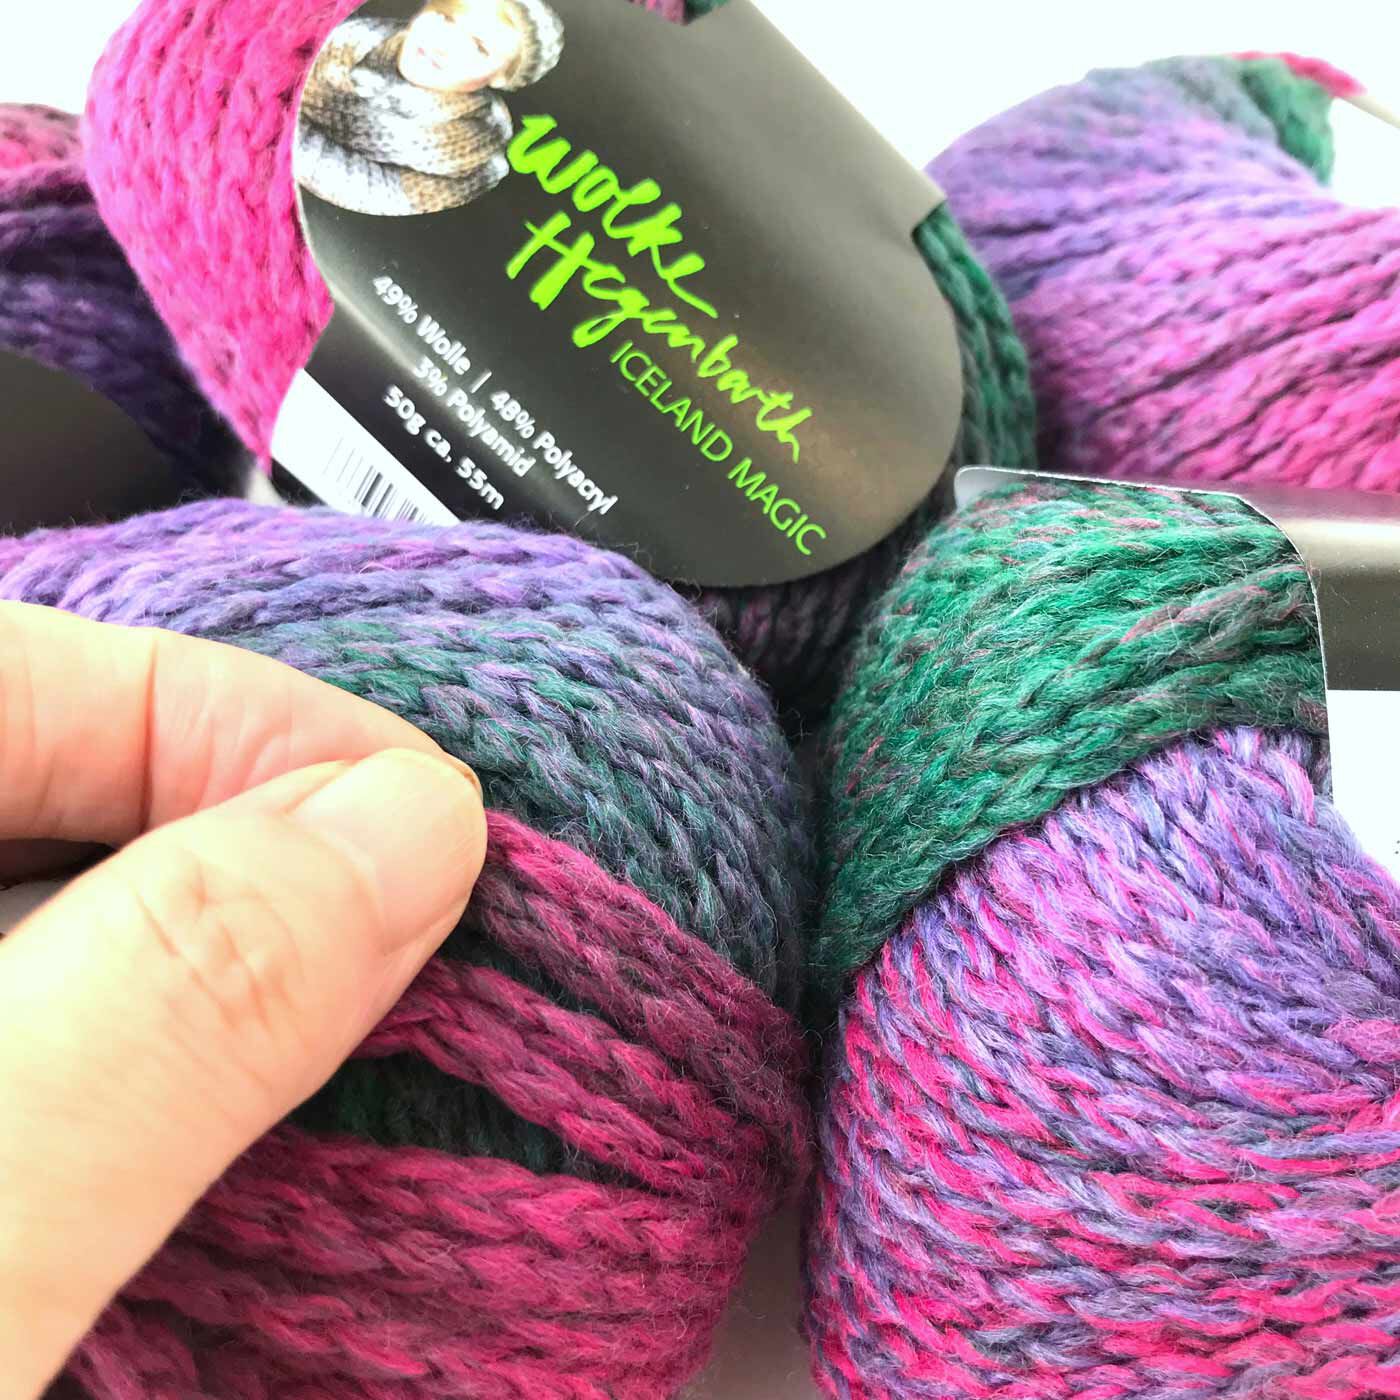 フェリシモの雑貨 クラソ|Iceland Magic　毛糸50g×5玉セット|8〜10mmのジャンボ針がおすすめの太い毛糸です。「i-cord（アイコード）」と呼ばれる、リリアンみたいな糸なので毛糸が割れないし、編み物が得意じゃないFuも、楽しくスイスイ編めました。初心者さんにもおすすめ。